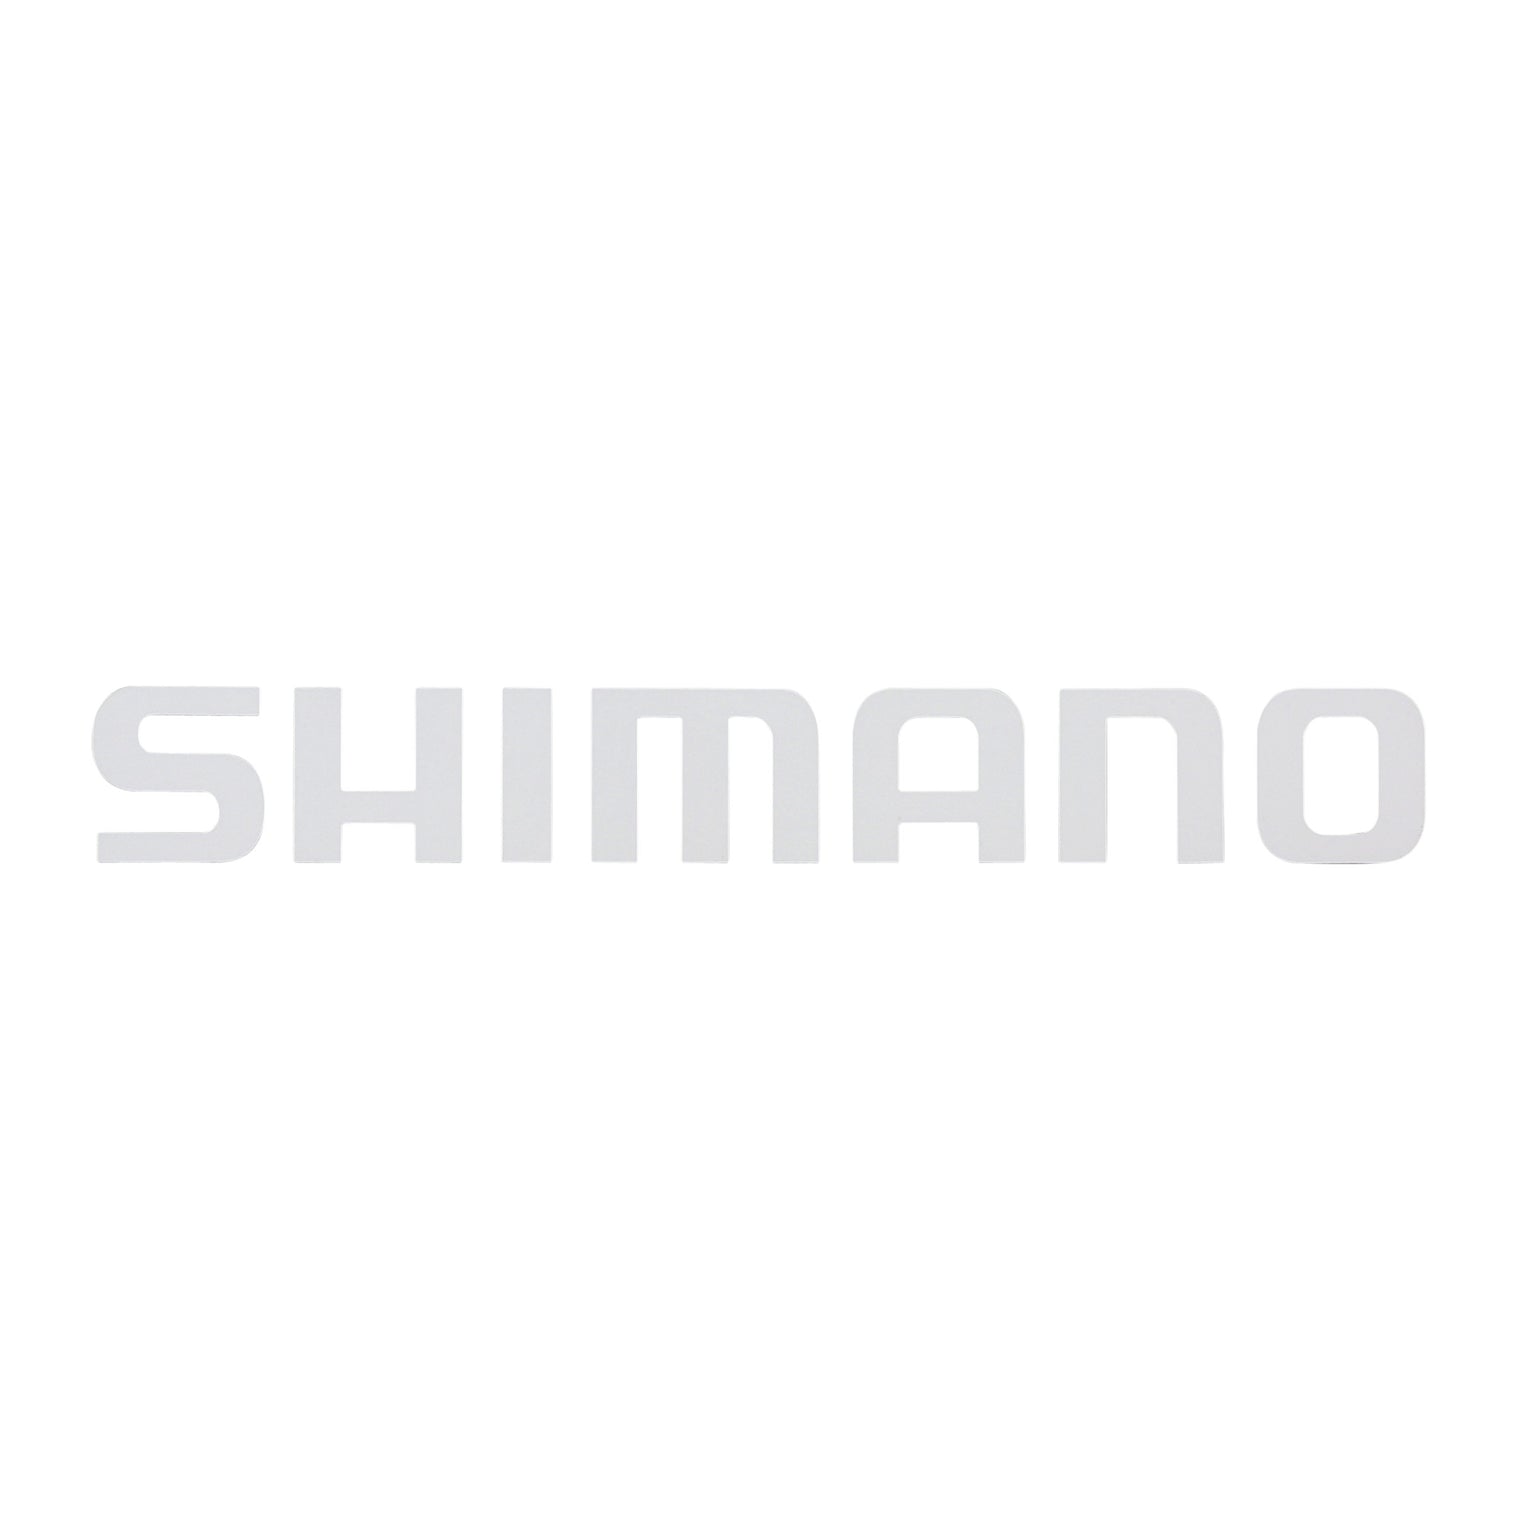 Shimano Decal Set Large Cyan